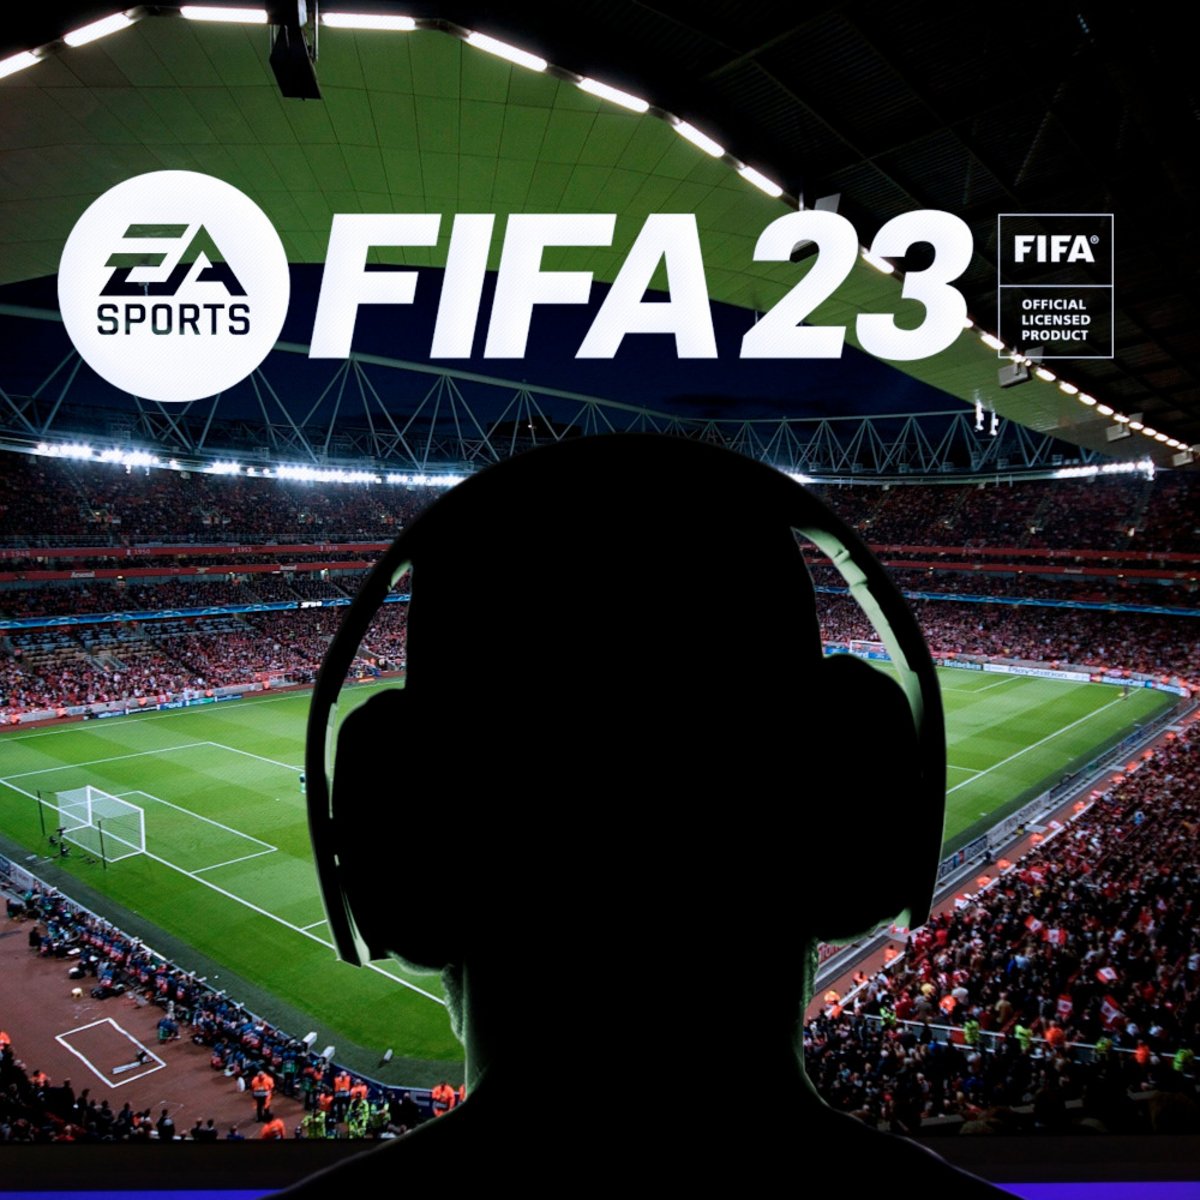 FIFA 23: Χωρίς Ολυμπιακό το παιχνίδι - NEXT - Games - Ολυμπιακός